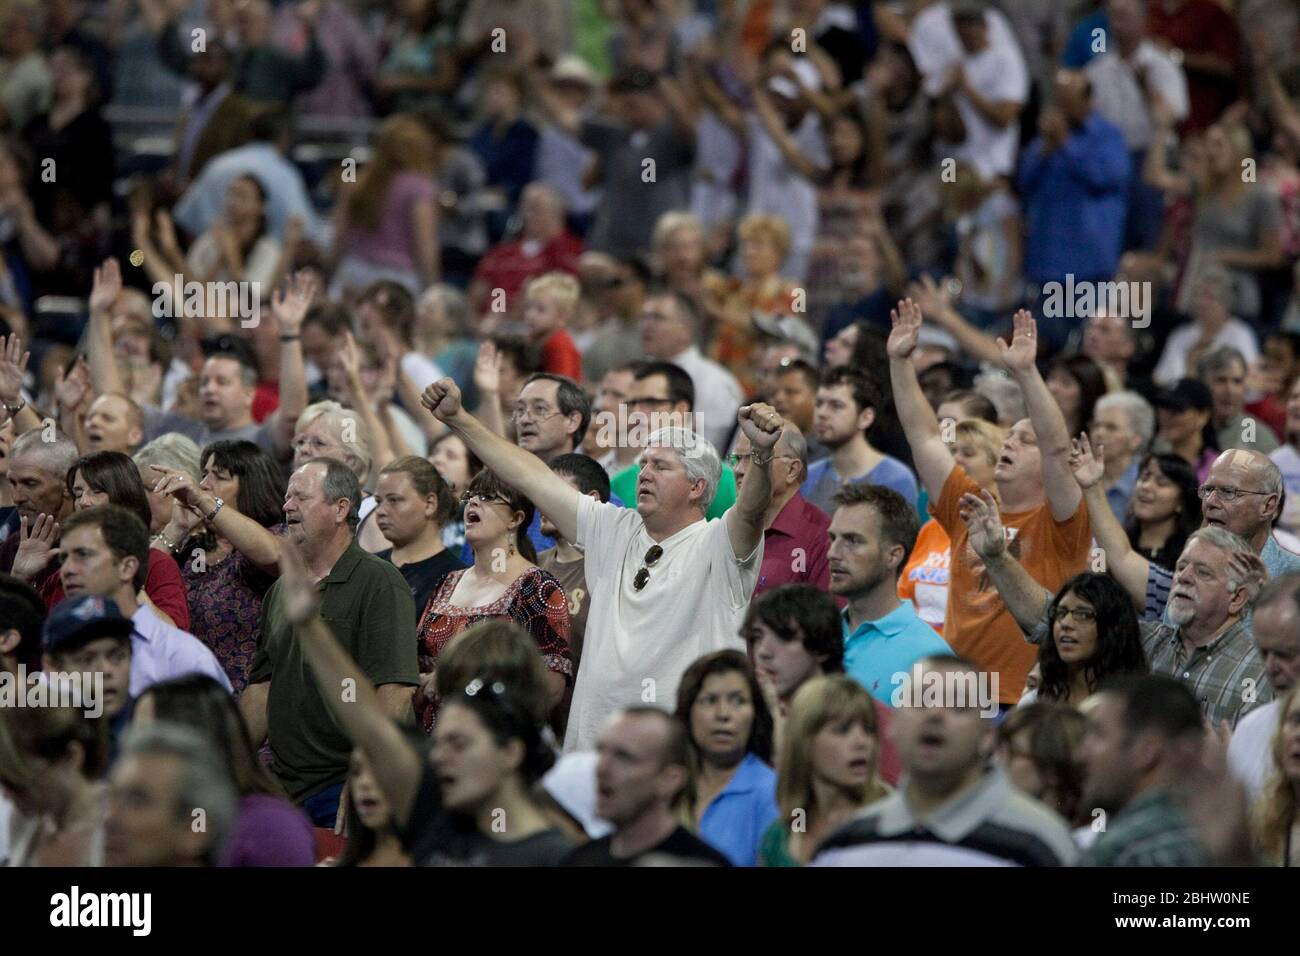 Houston, Texas - 6 de agosto de 2011 - los adoradores escuchan oraciones y música en 'The Response', un día de duración 'llamado a la oración por una nación en crisis' que atrajo a más de 30,000 adoradores para escuchar oraciones, música gospel y una galería de hablantes evangélicos conservadores en el estadio Reliant de Houston, TX. © Bob Daemmrich Foto de stock